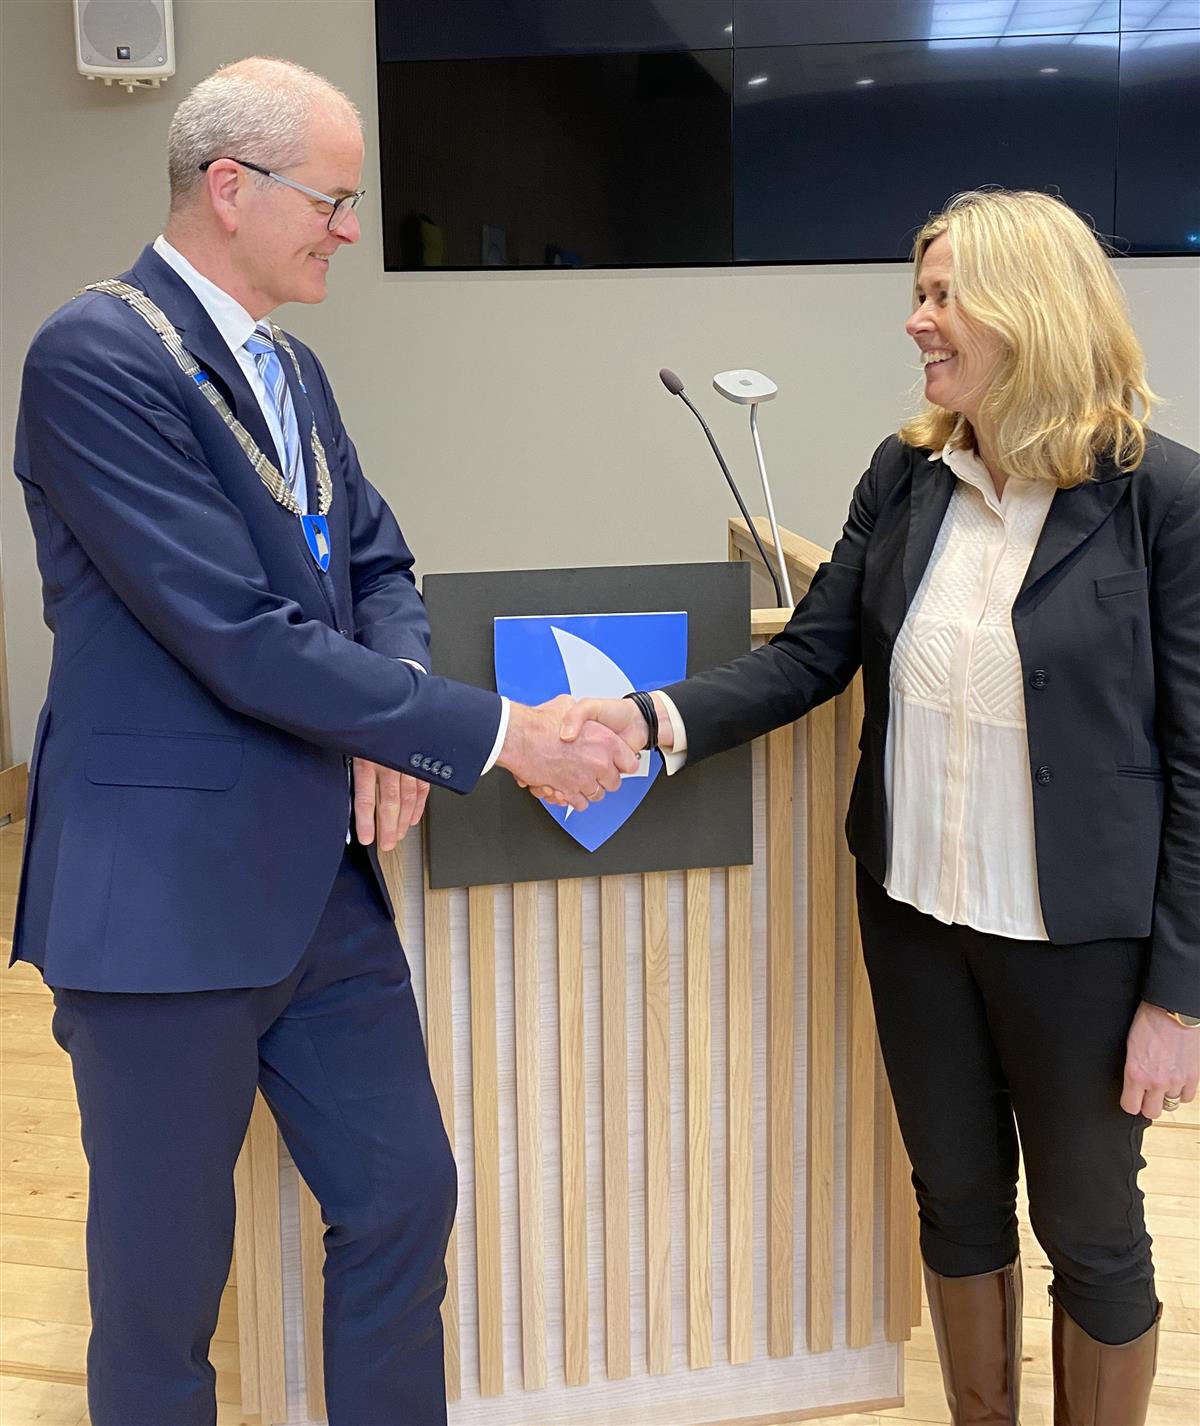 Ordfører Jon Sanness Andersen og Kristin Nilsen trykker hverandres hender - Klikk for stort bilde